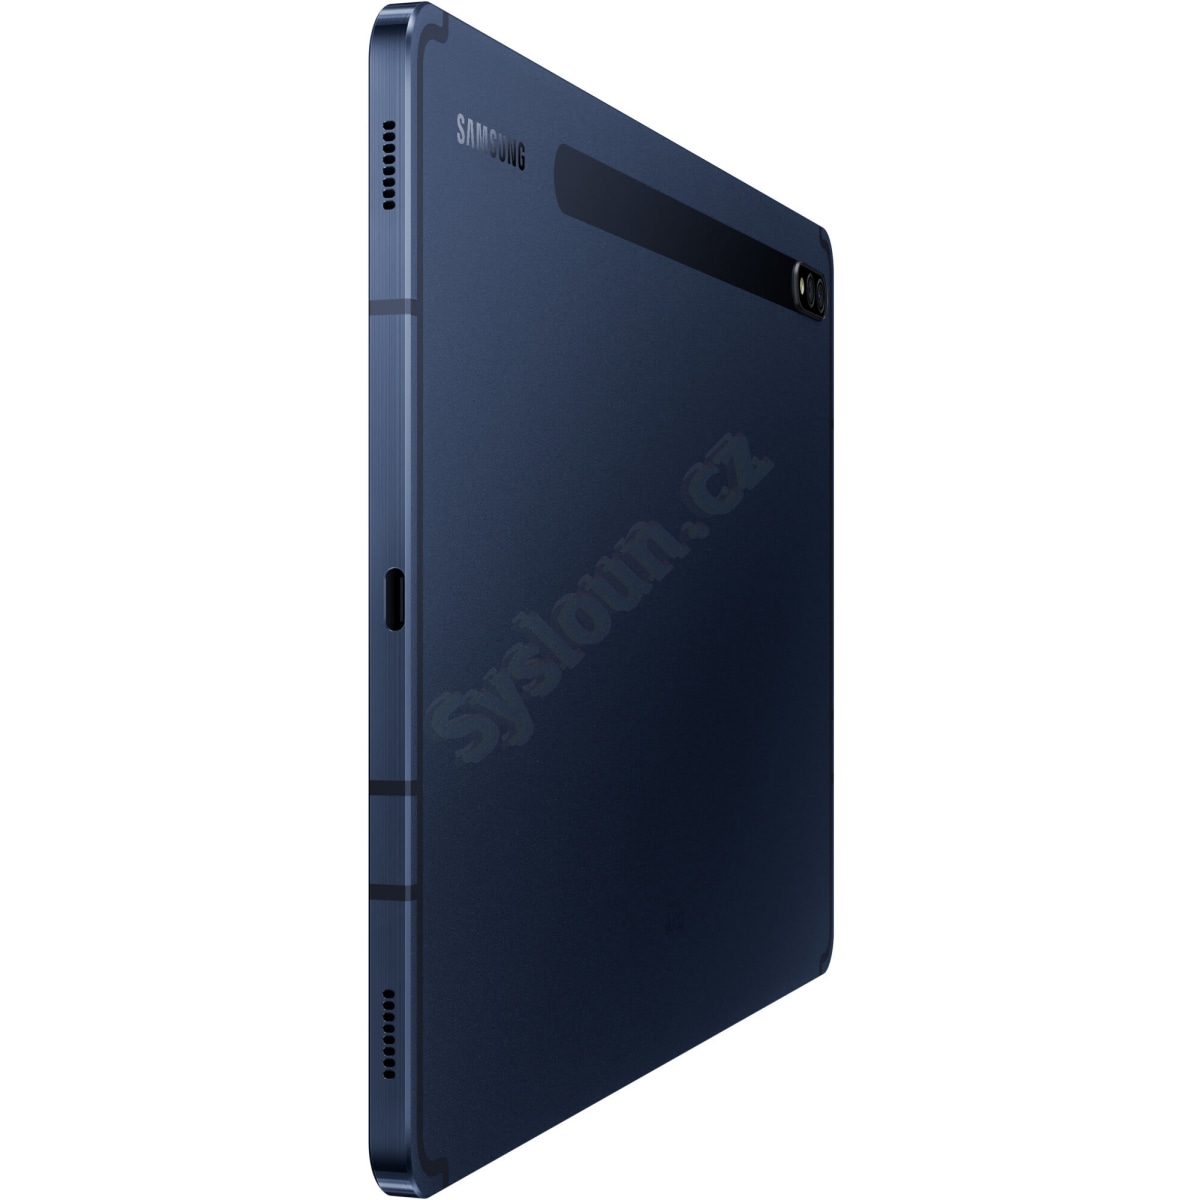 Samsung Galaxy Tab S7